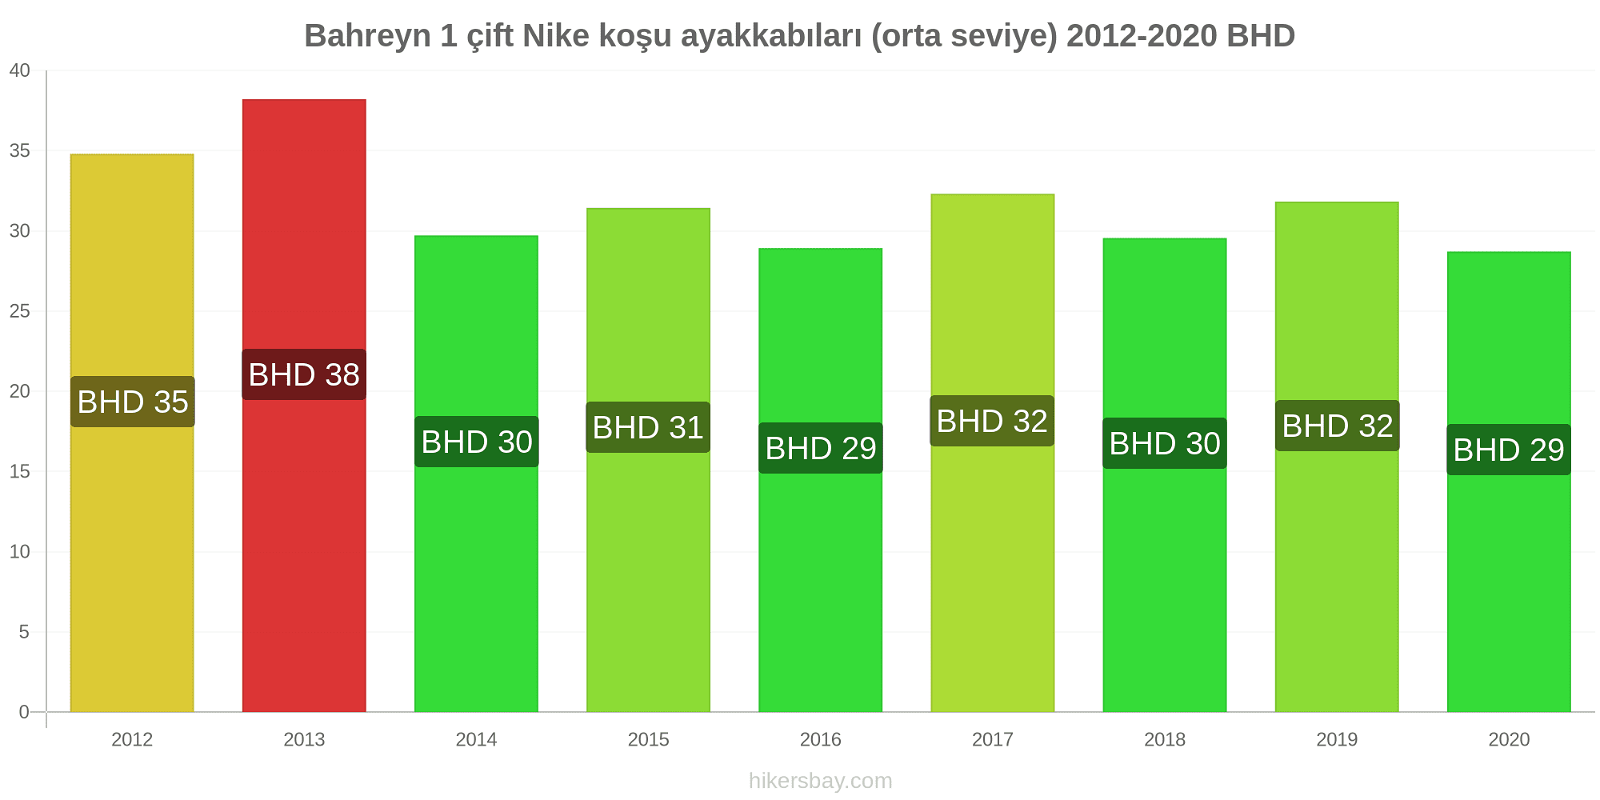 Bahreyn fiyat değişiklikleri 1 çift Nike koşu ayakkabıları (orta seviye) hikersbay.com